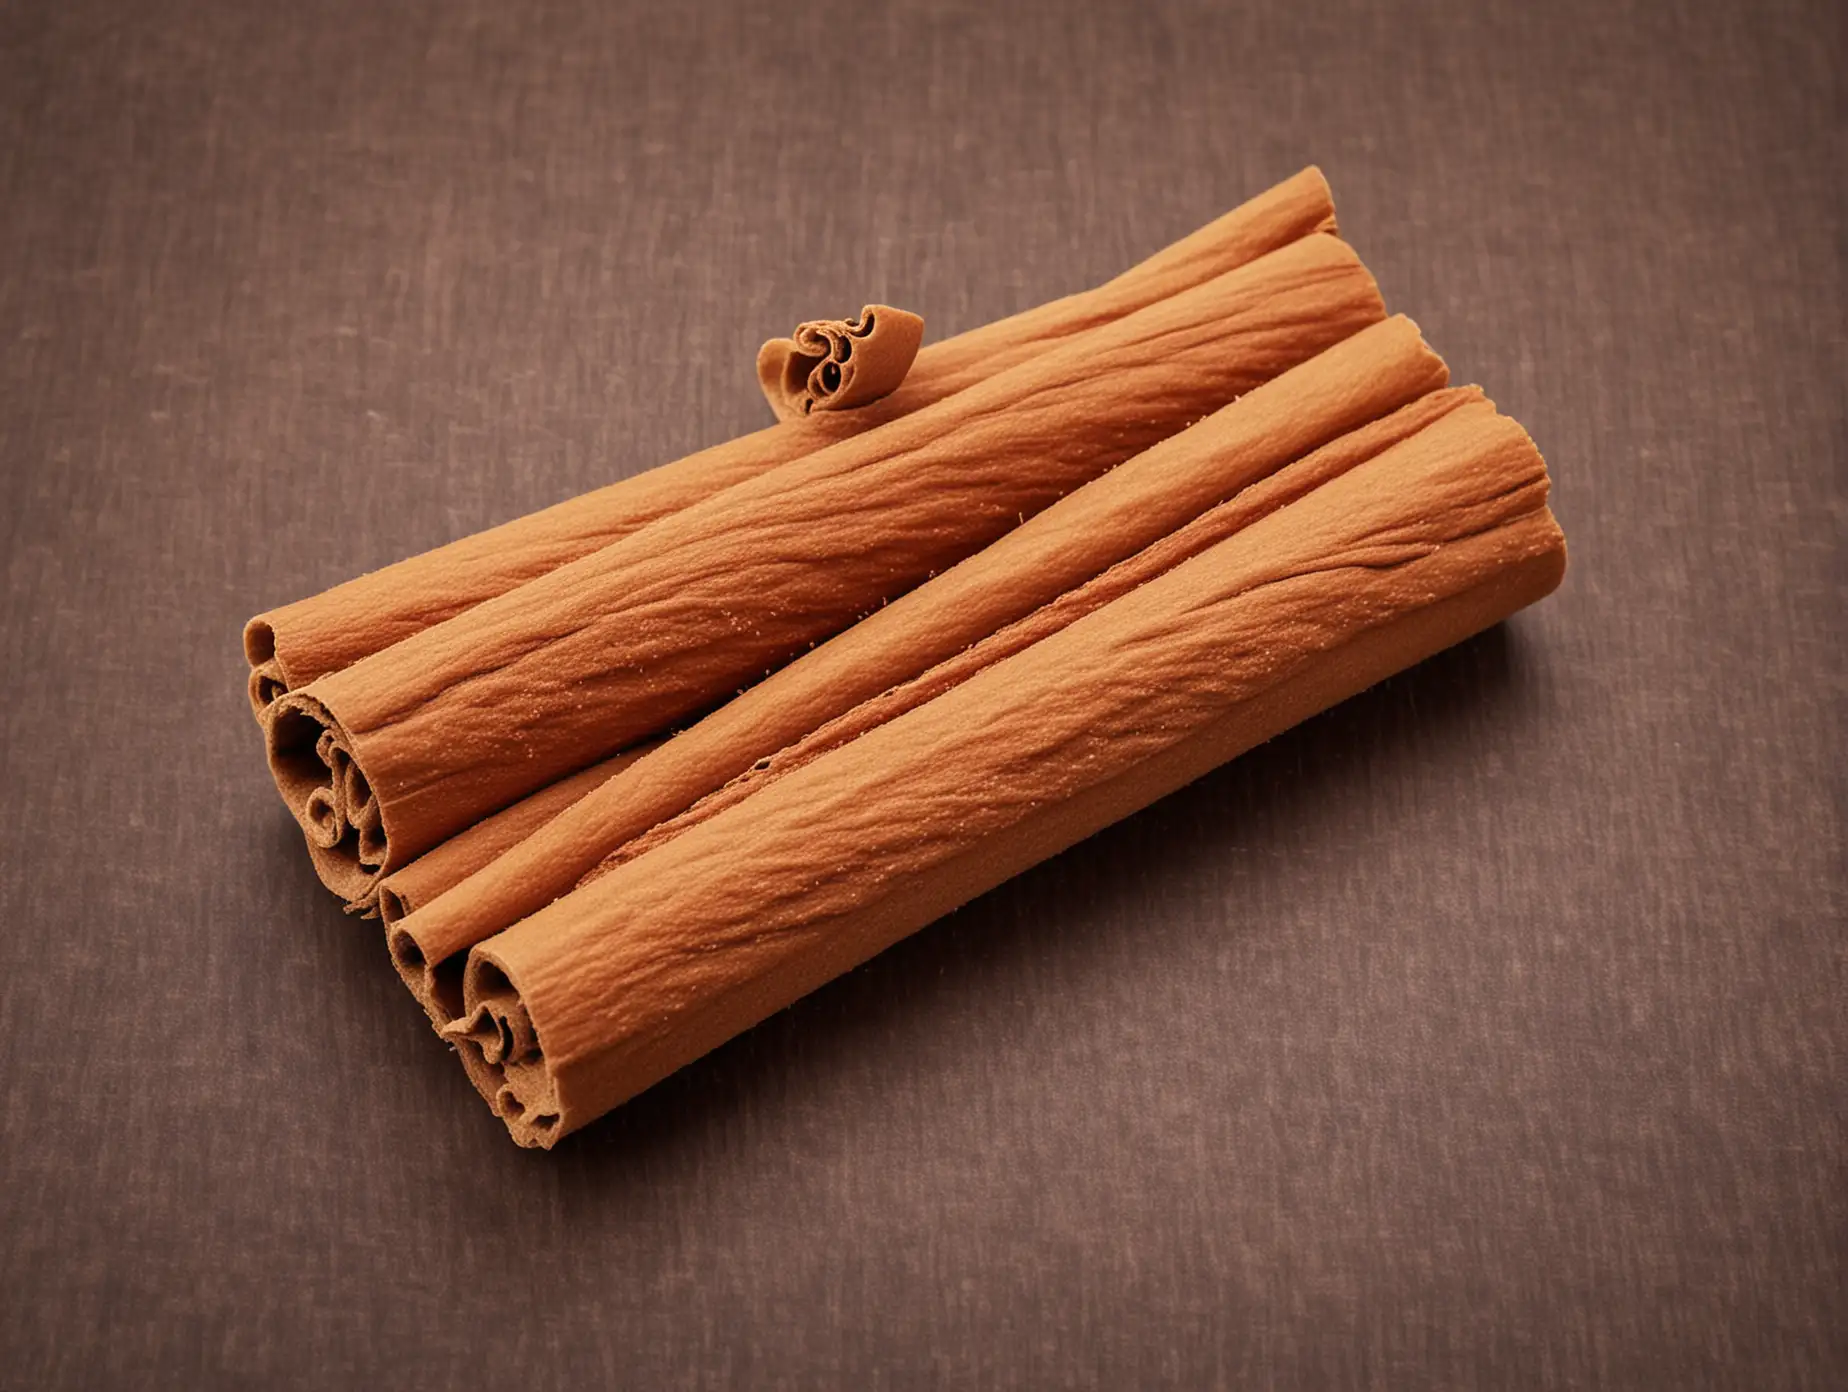 Aromatic Cinnamon Sticks Arranged in Warm Glow